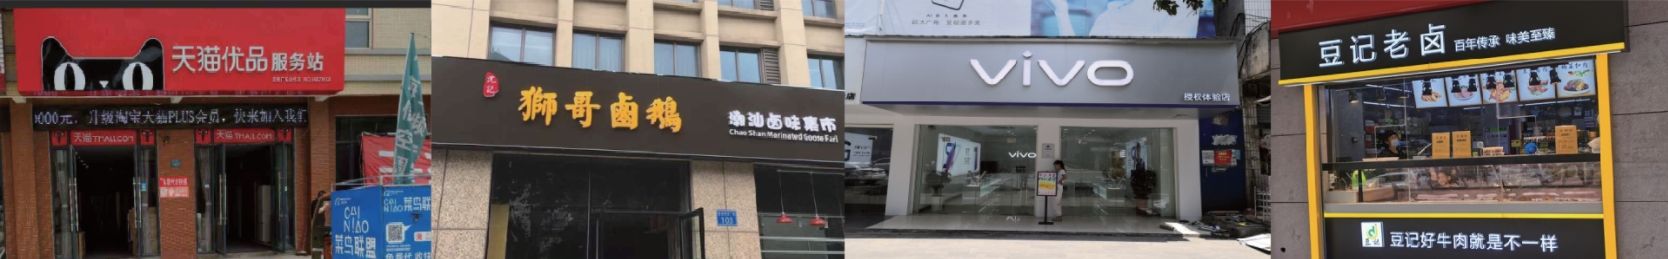 泗阳公司简介-泗阳门头招牌-湖北凯创文化传媒有限公司